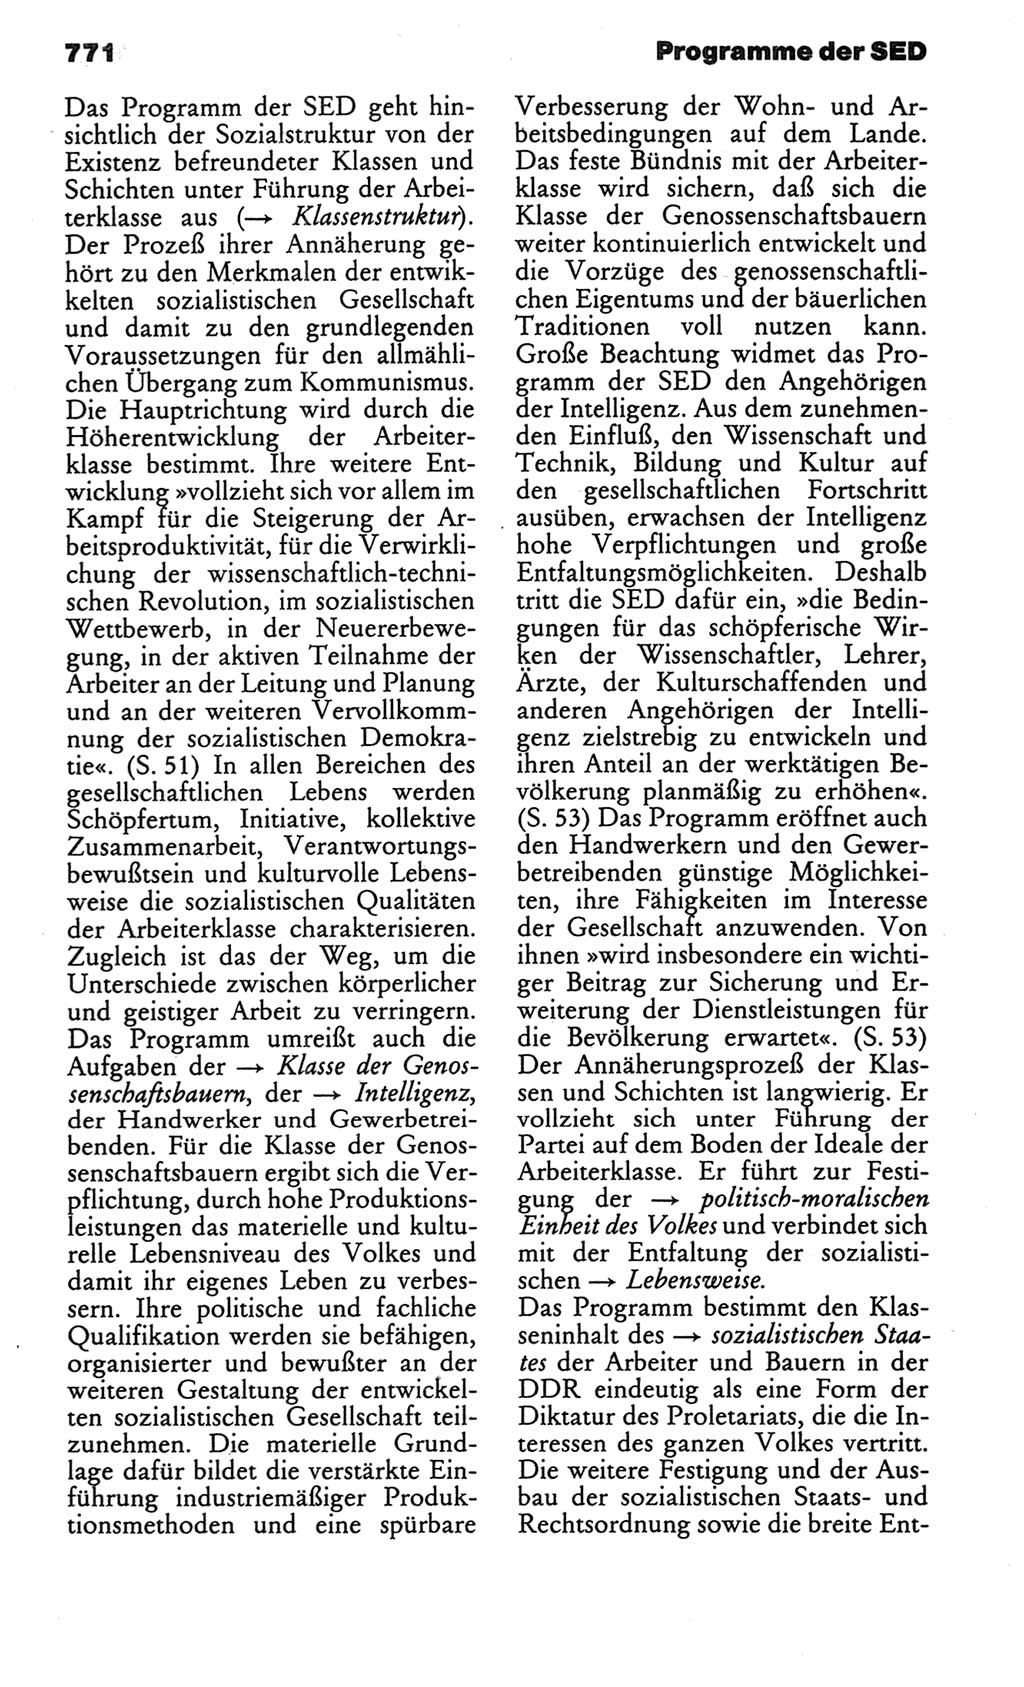 Kleines politisches Wörterbuch [Deutsche Demokratische Republik (DDR)] 1986, Seite 771 (Kl. pol. Wb. DDR 1986, S. 771)